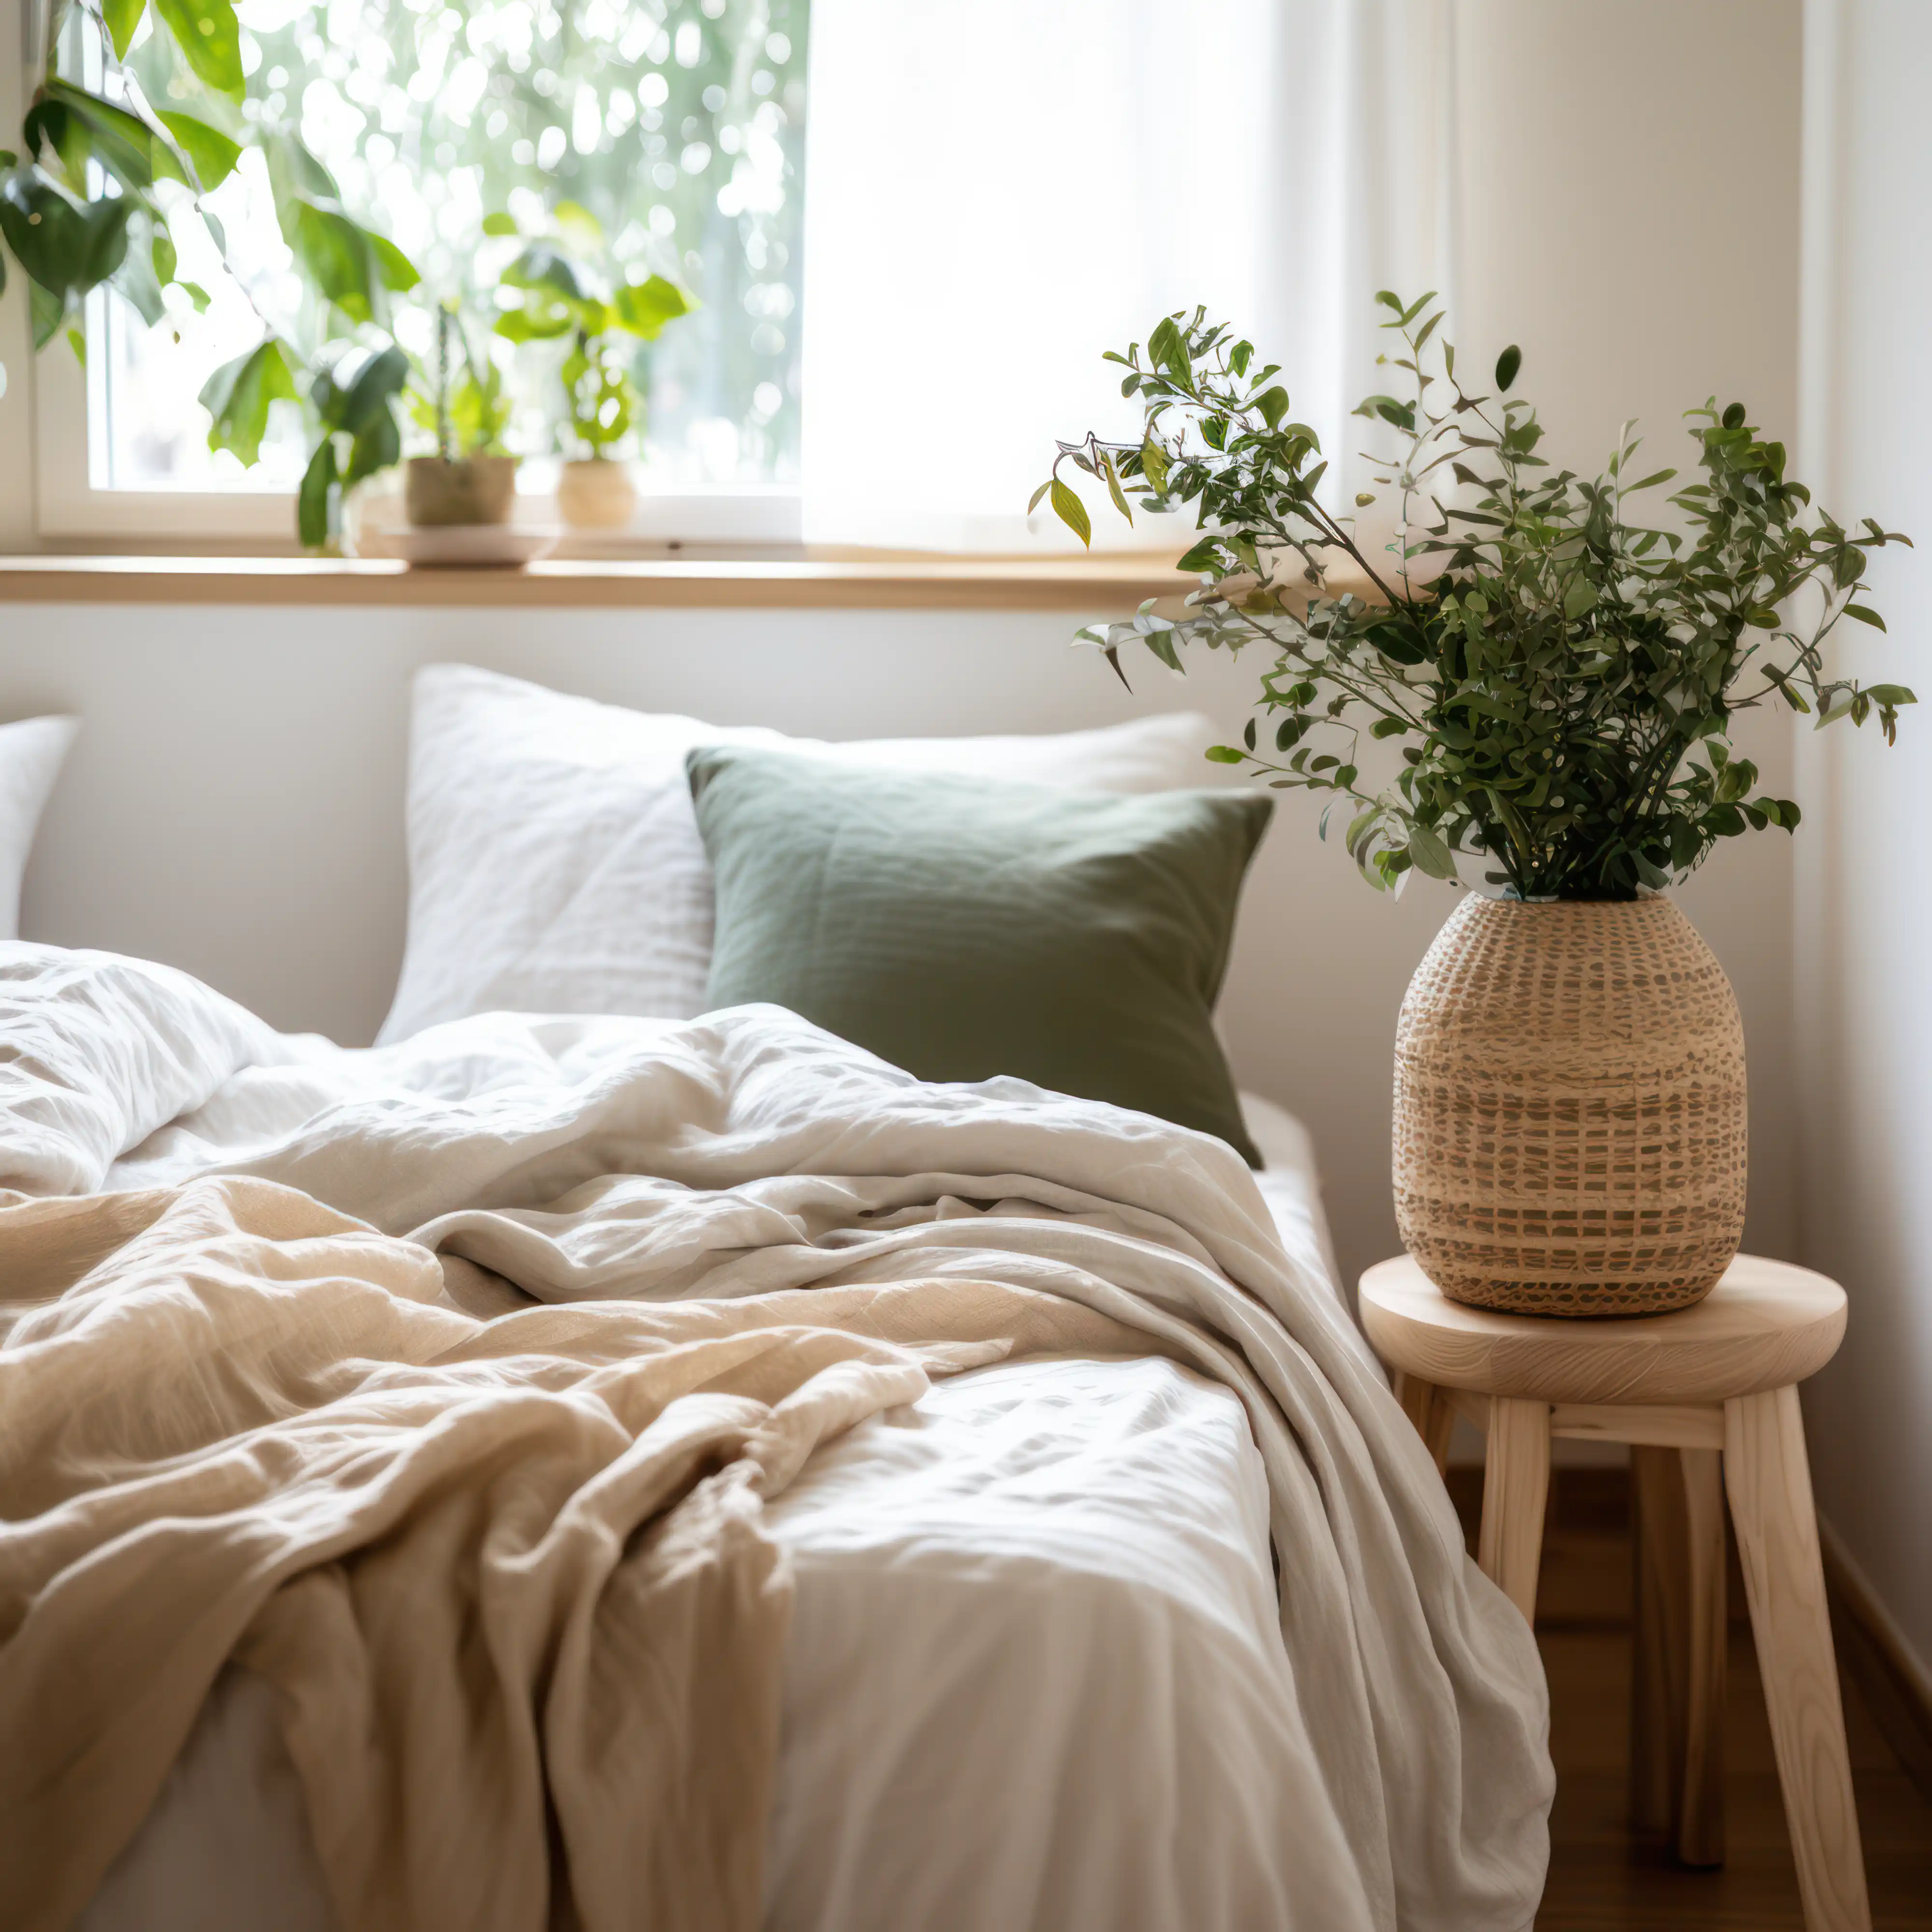 Intérieur lumineux de chambre avec un oreiller vert, du linge blanc et une plante en pot sur un tabouret en bois, intérieur signé Sarah Brown Design